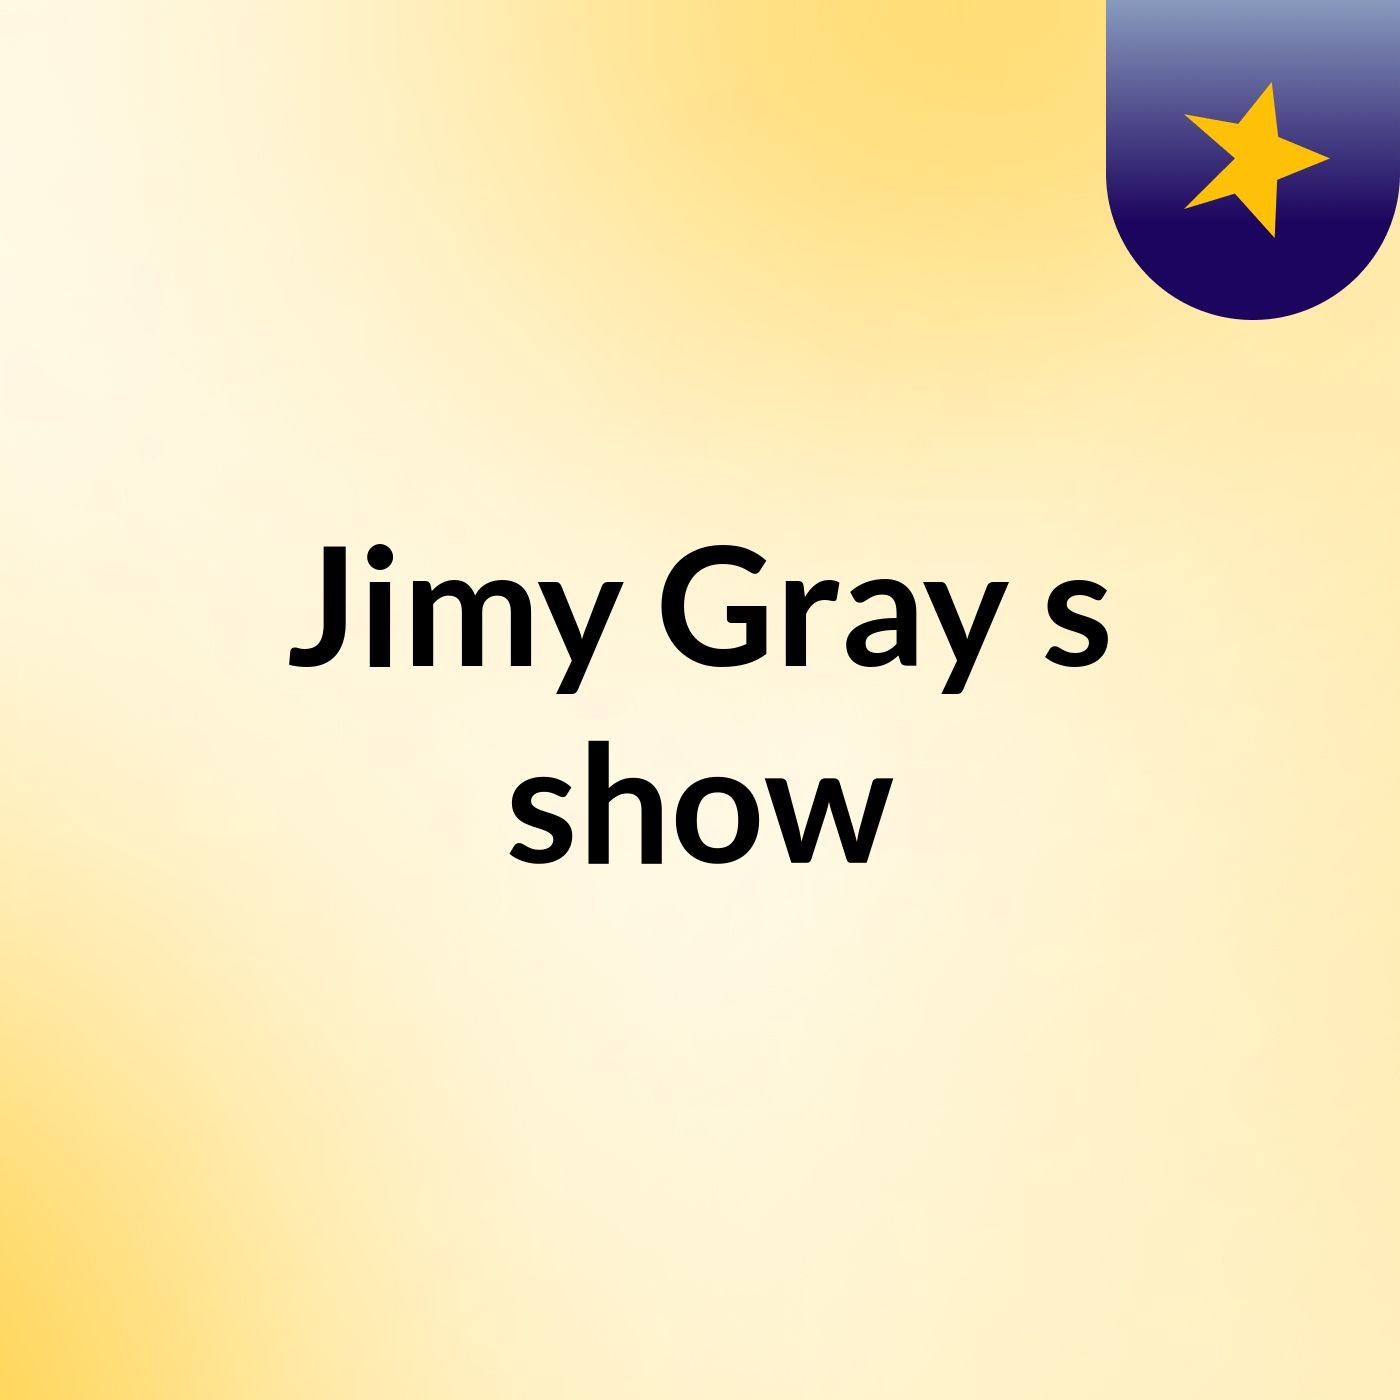 Jimy Gray's show